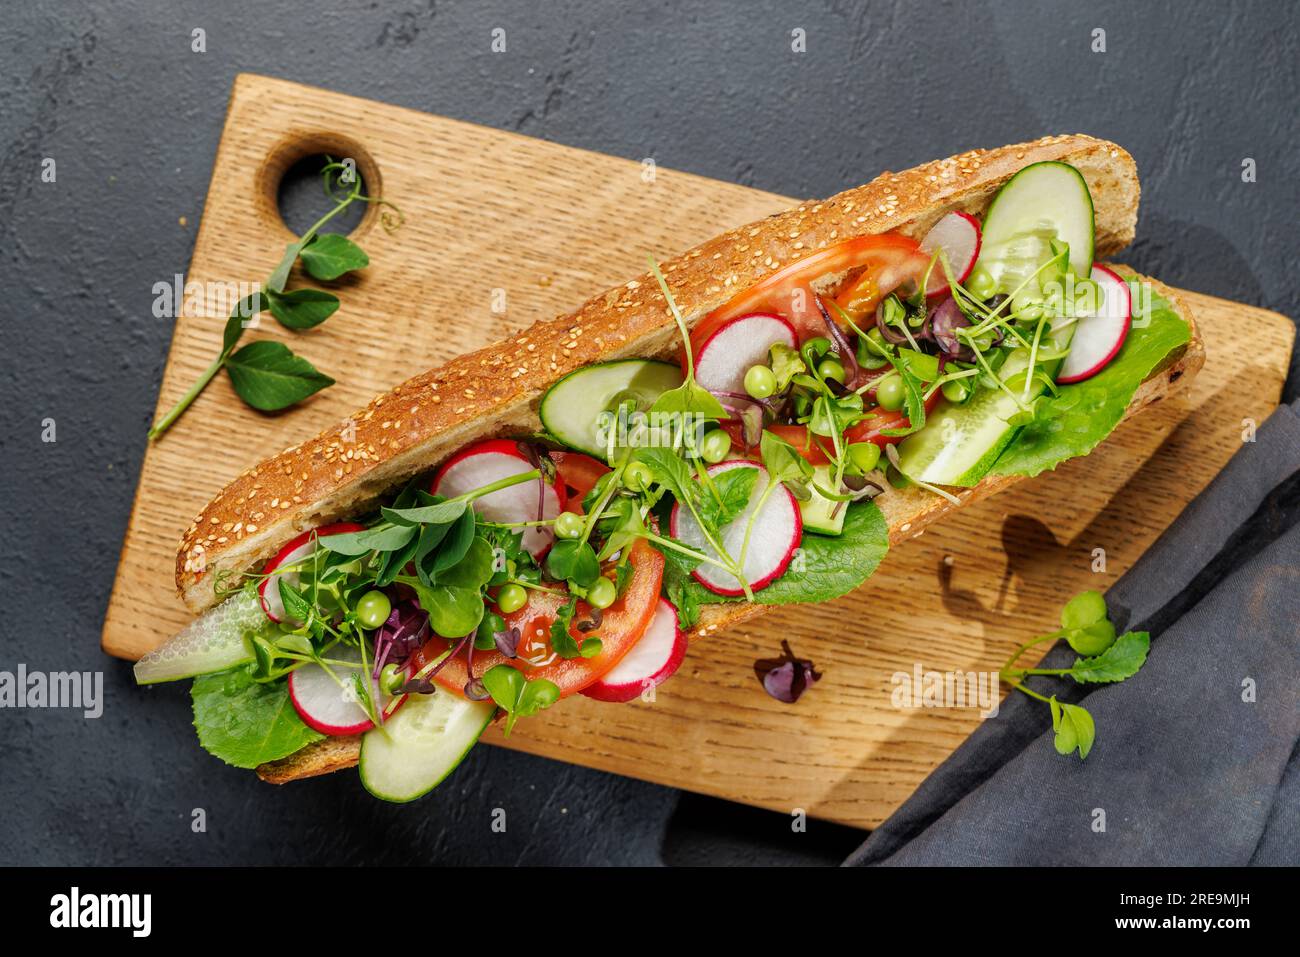 Köstliches vegetarisches Sandwich gefüllt mit einem frischen Baguette, gefüllt mit Geschmack und gesunden Zutaten Stockfoto